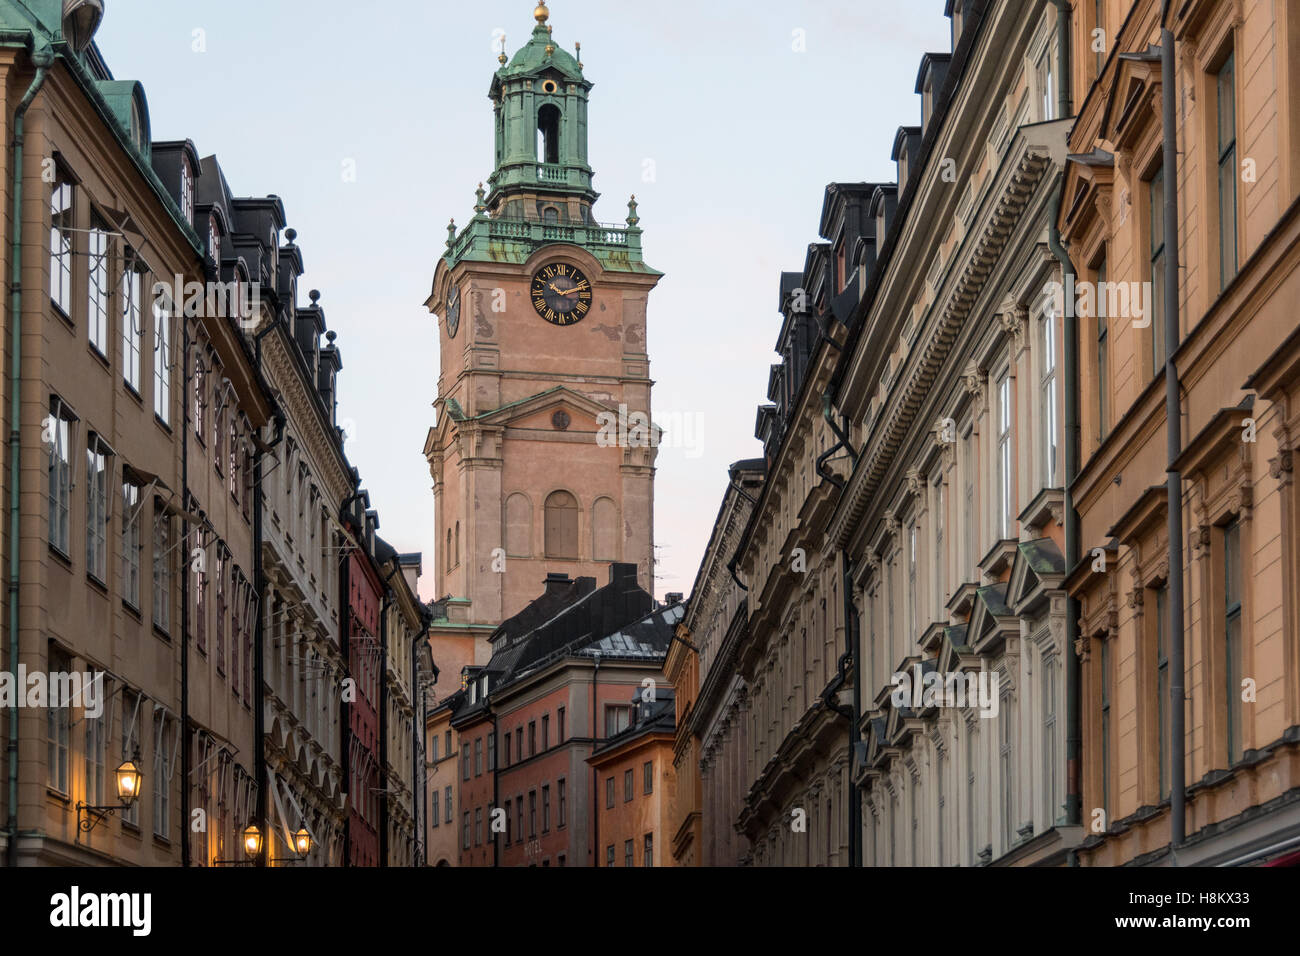 Stockholm, Schweden - Storkyrkan, der ältesten Kirche in Gamla Stan. Ansonsten genannt der Altstadt, es ist eines der größten und Bes Stockfoto